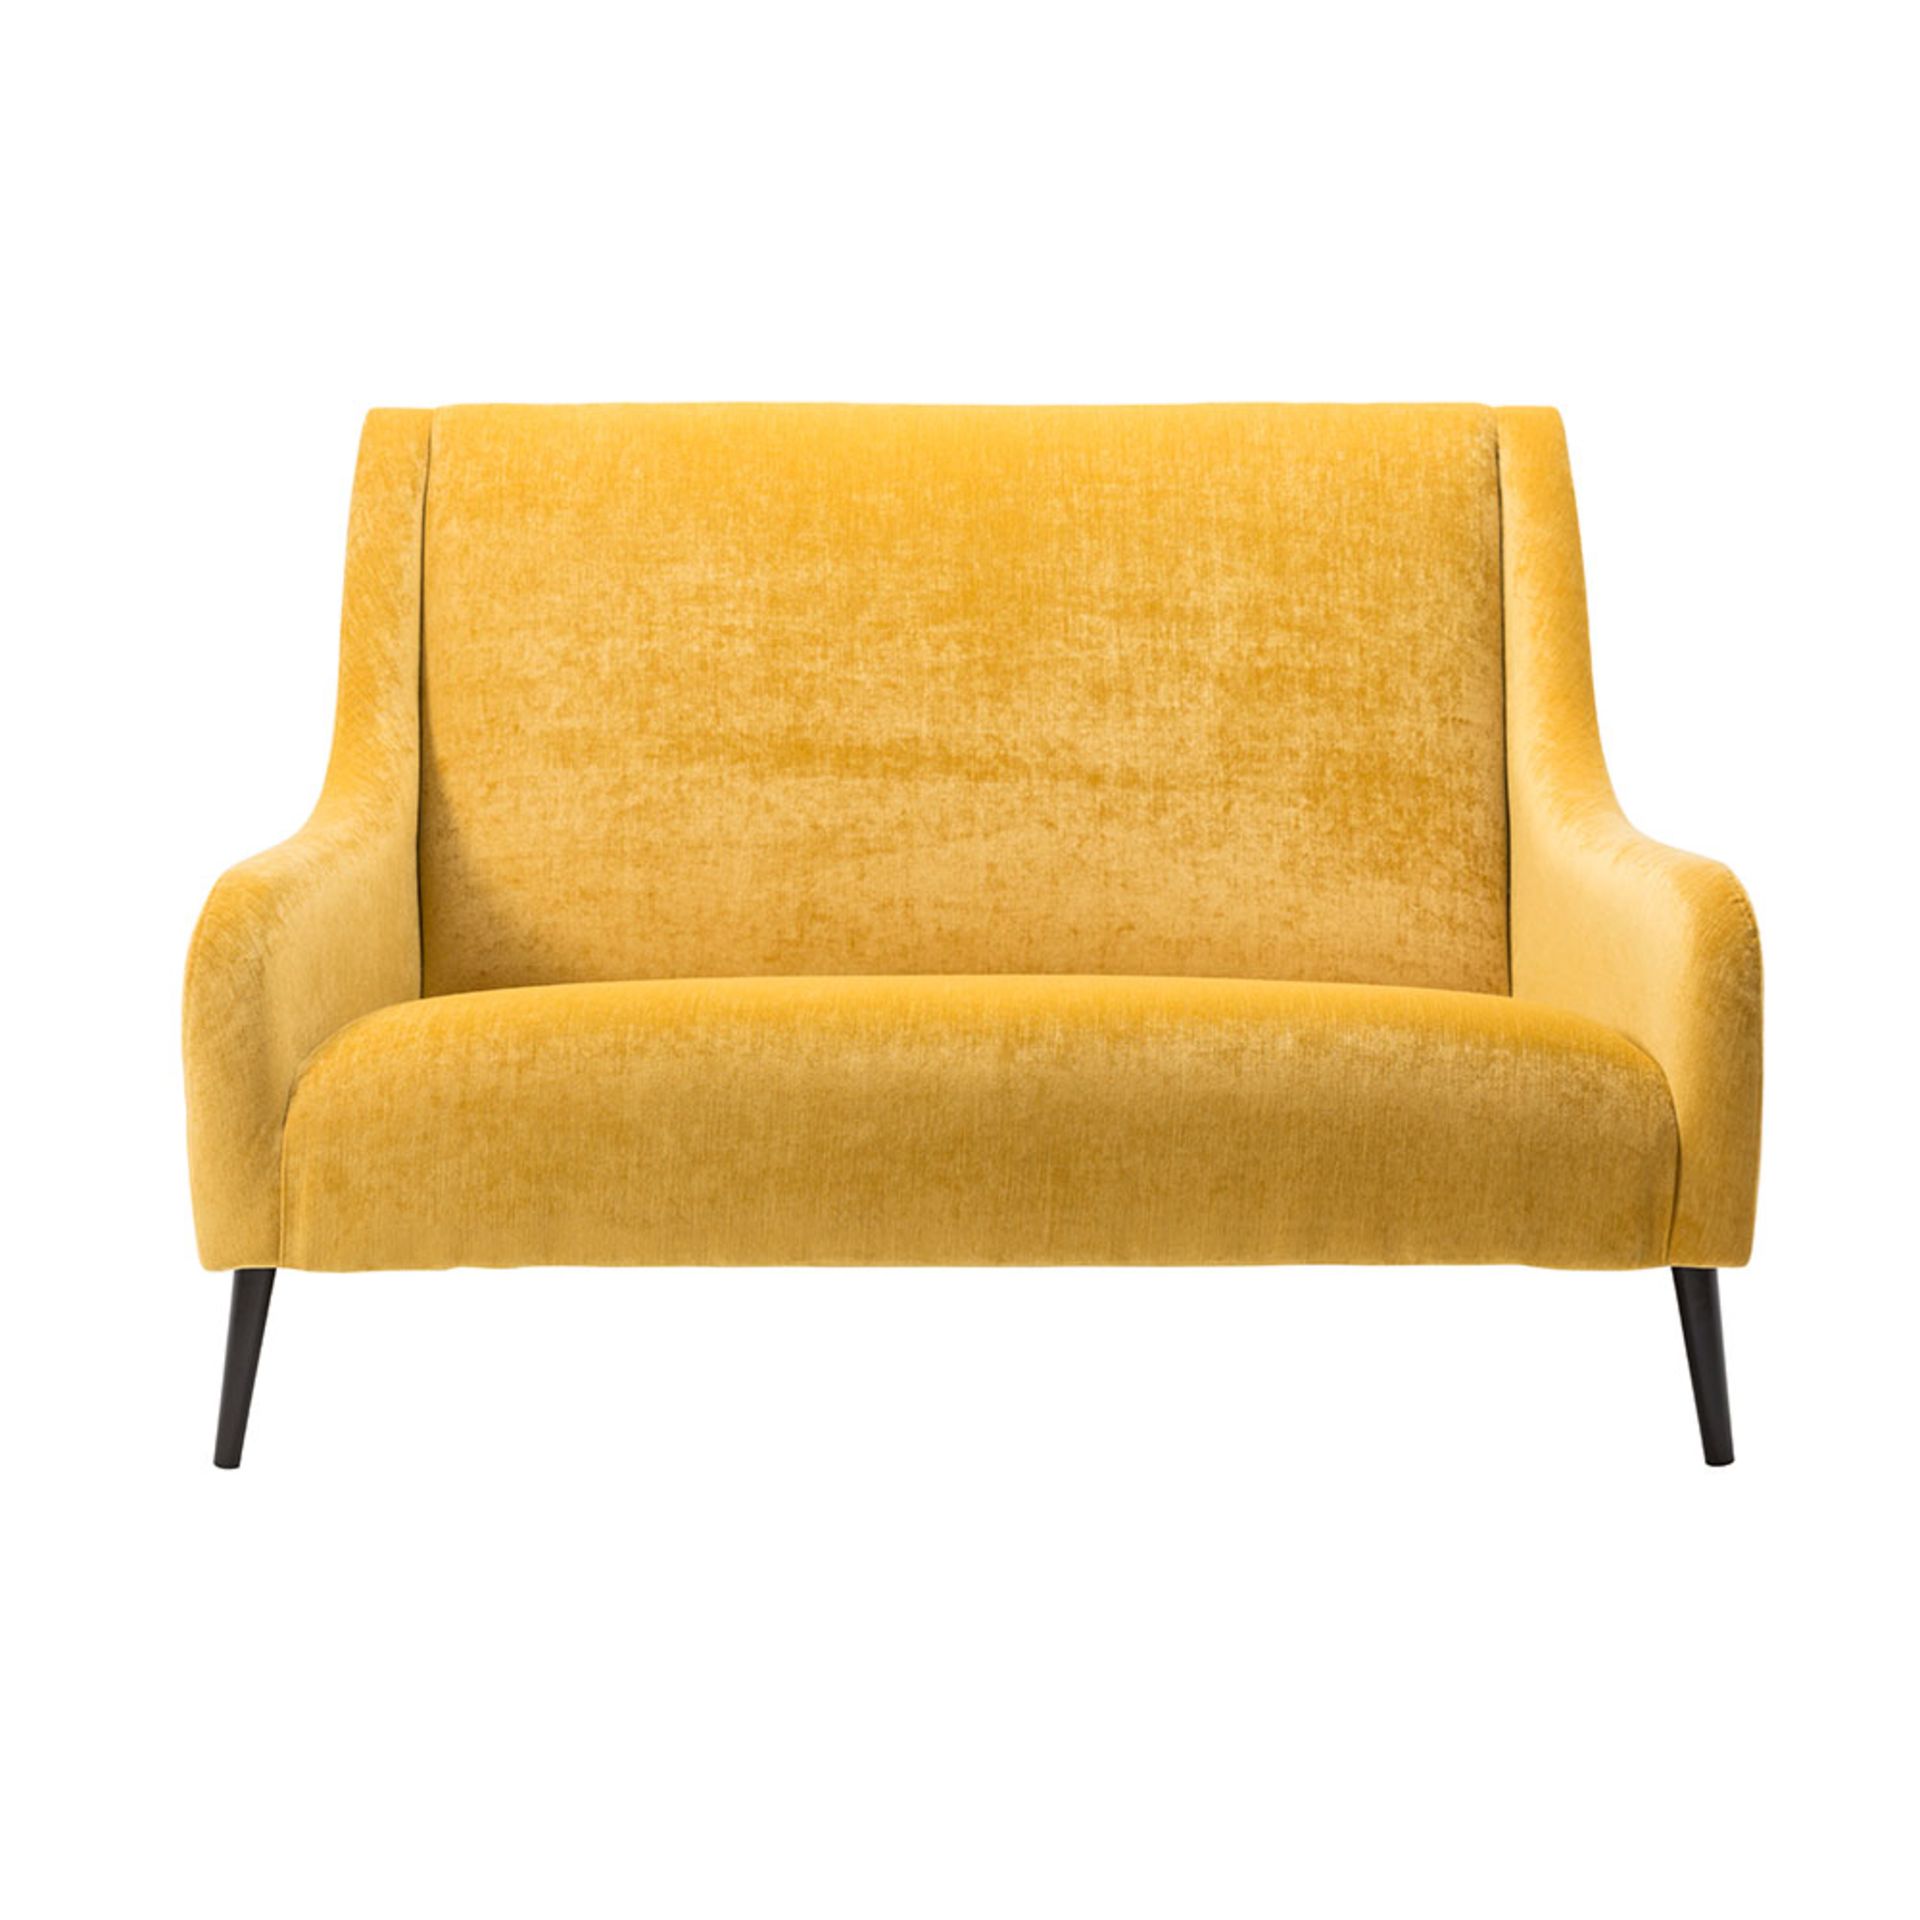 1 x Lauran Golden Sunflower Contemporary Sofa - RRP £1,029! - Bild 5 aus 5